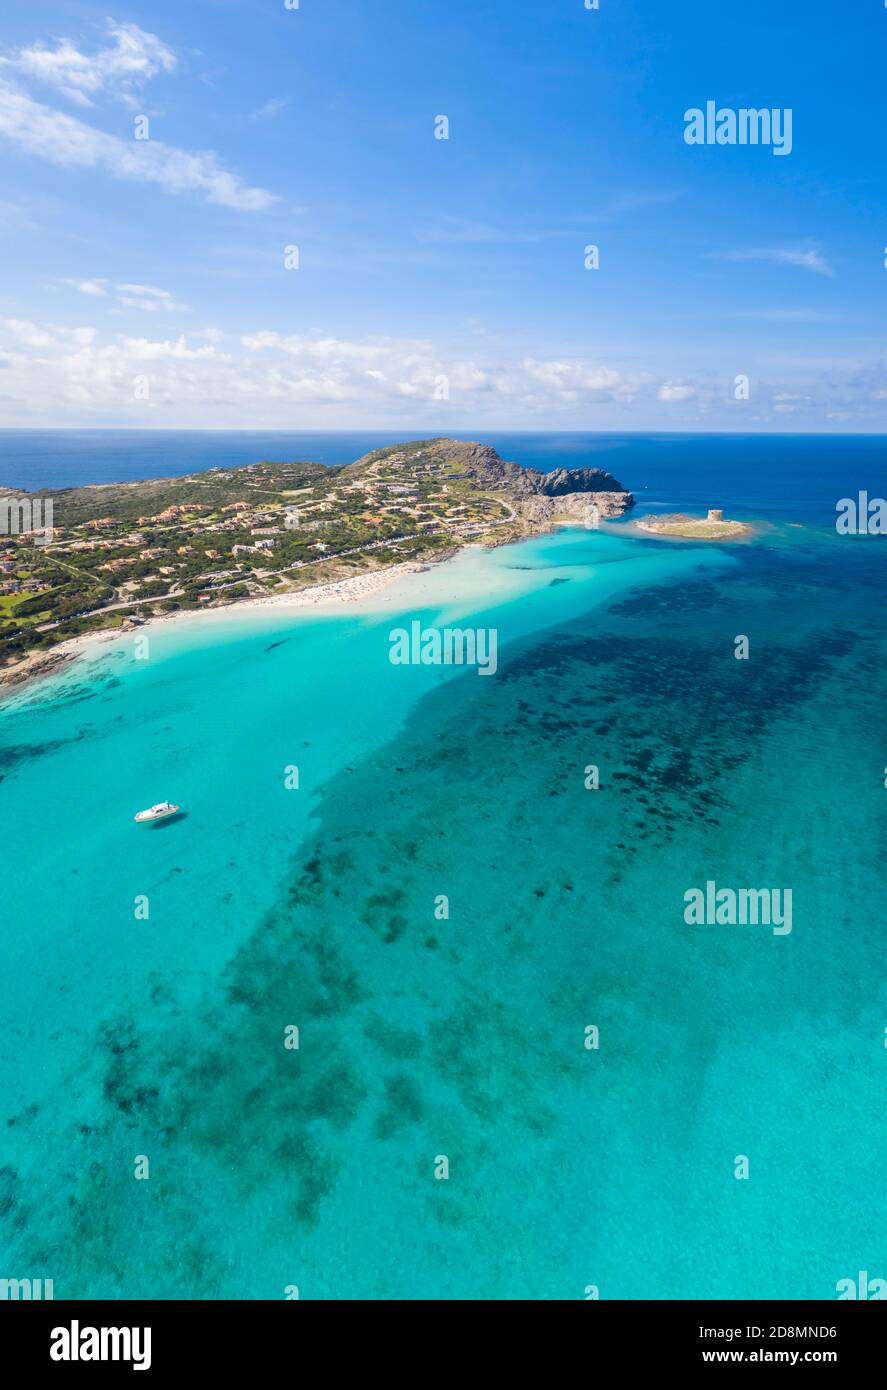 Veduta aerea di Stintino con la Pelosa e la spiaggia della Pelosetta e Capo Falcone. Stintino, Golfo dell'Asinara, Sassari, Sardegna, Italia. Foto Stock